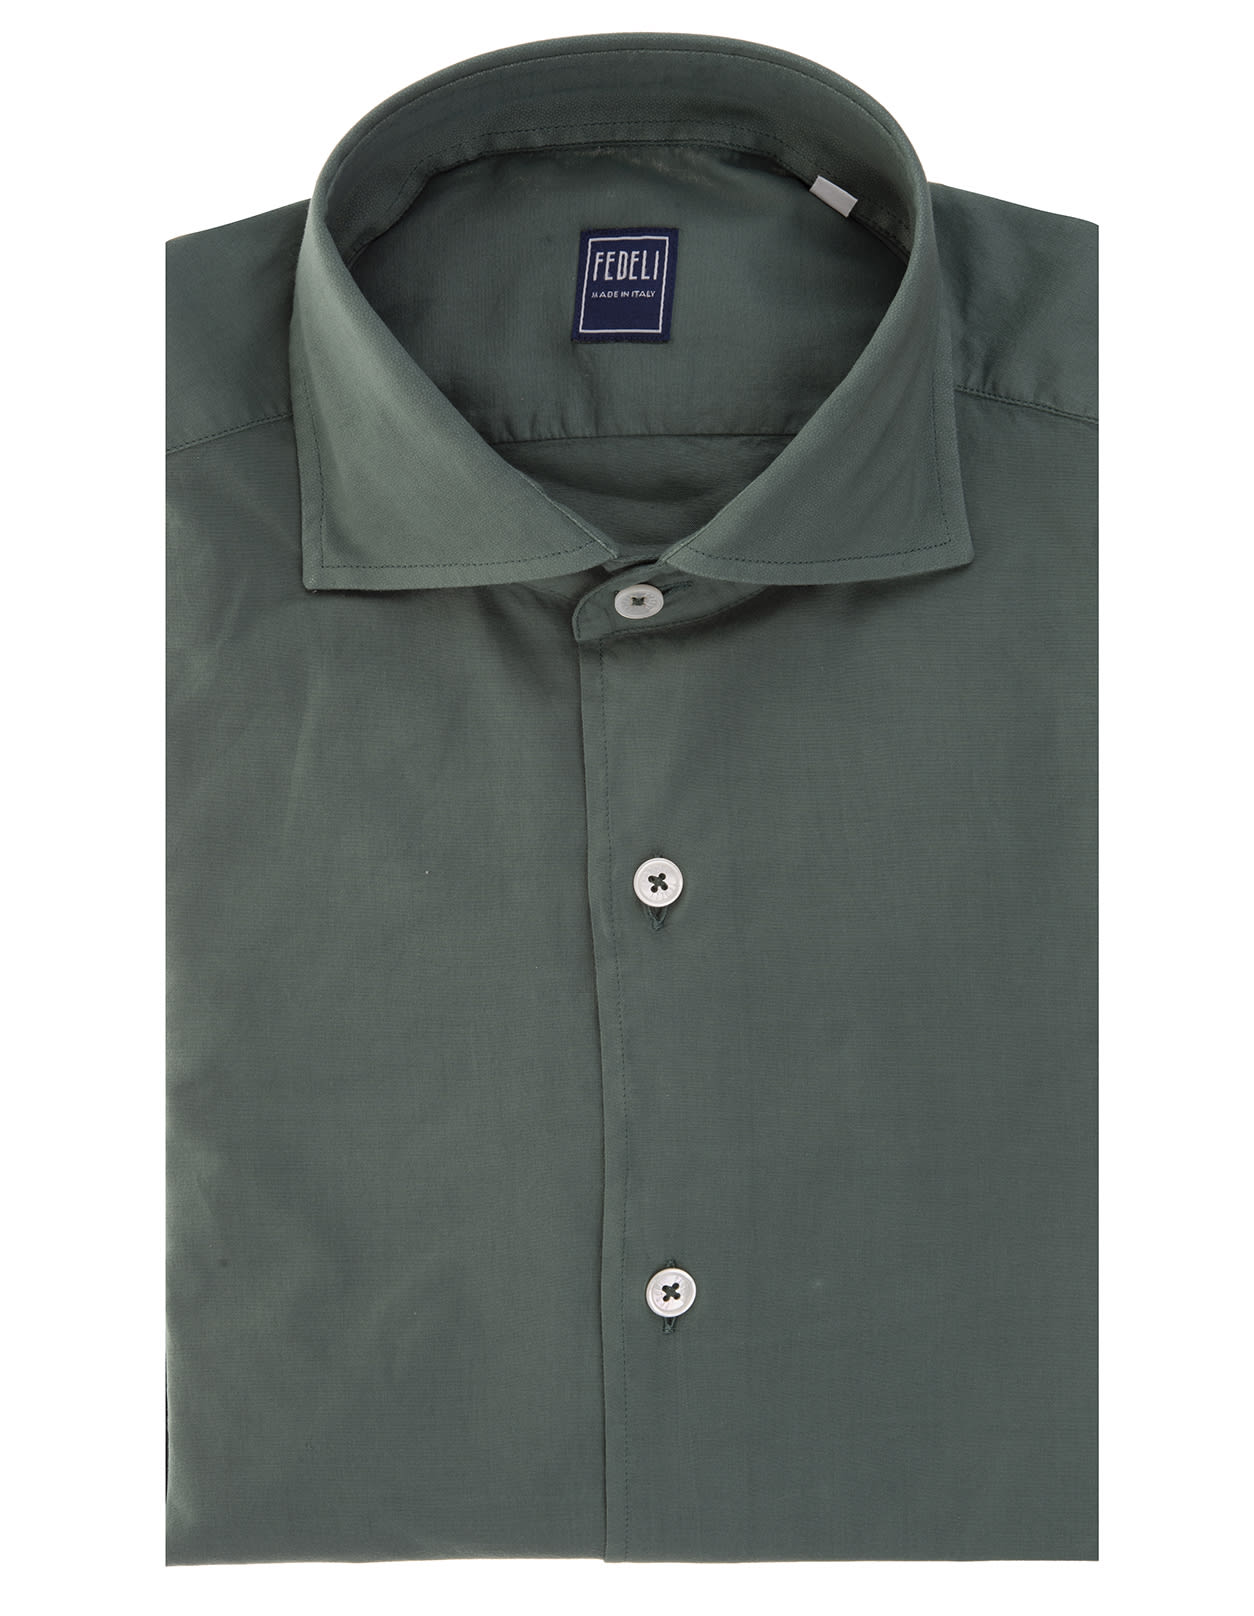 Fedeli Man Dark Green Lightweight Cotton Shirt